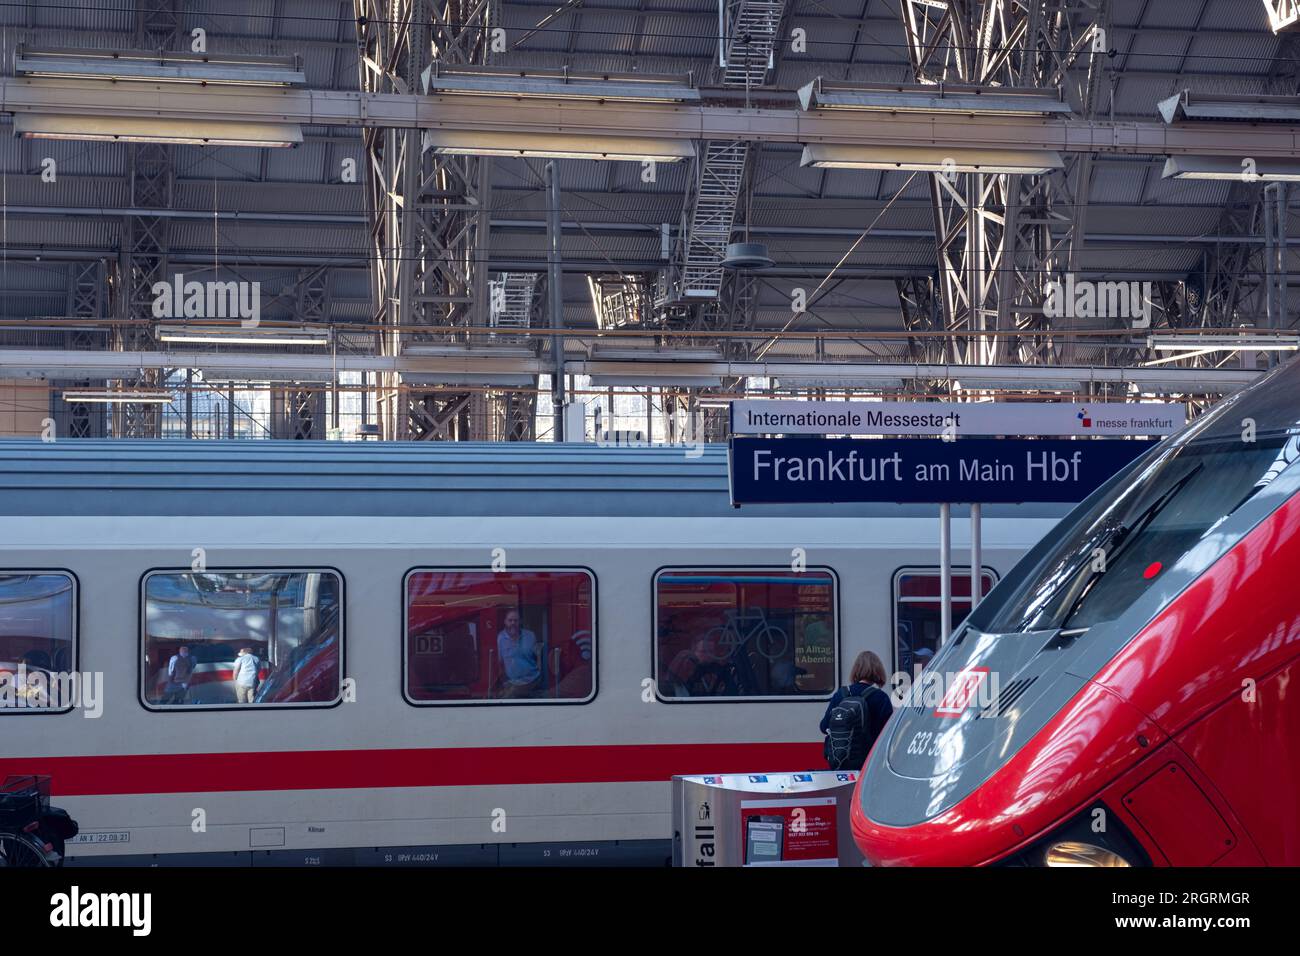 Treno rosso moderno della Deutsche Bahn alla stazione di Arankfurt am Main. Bellissimo primo piano del treno. Foto Stock